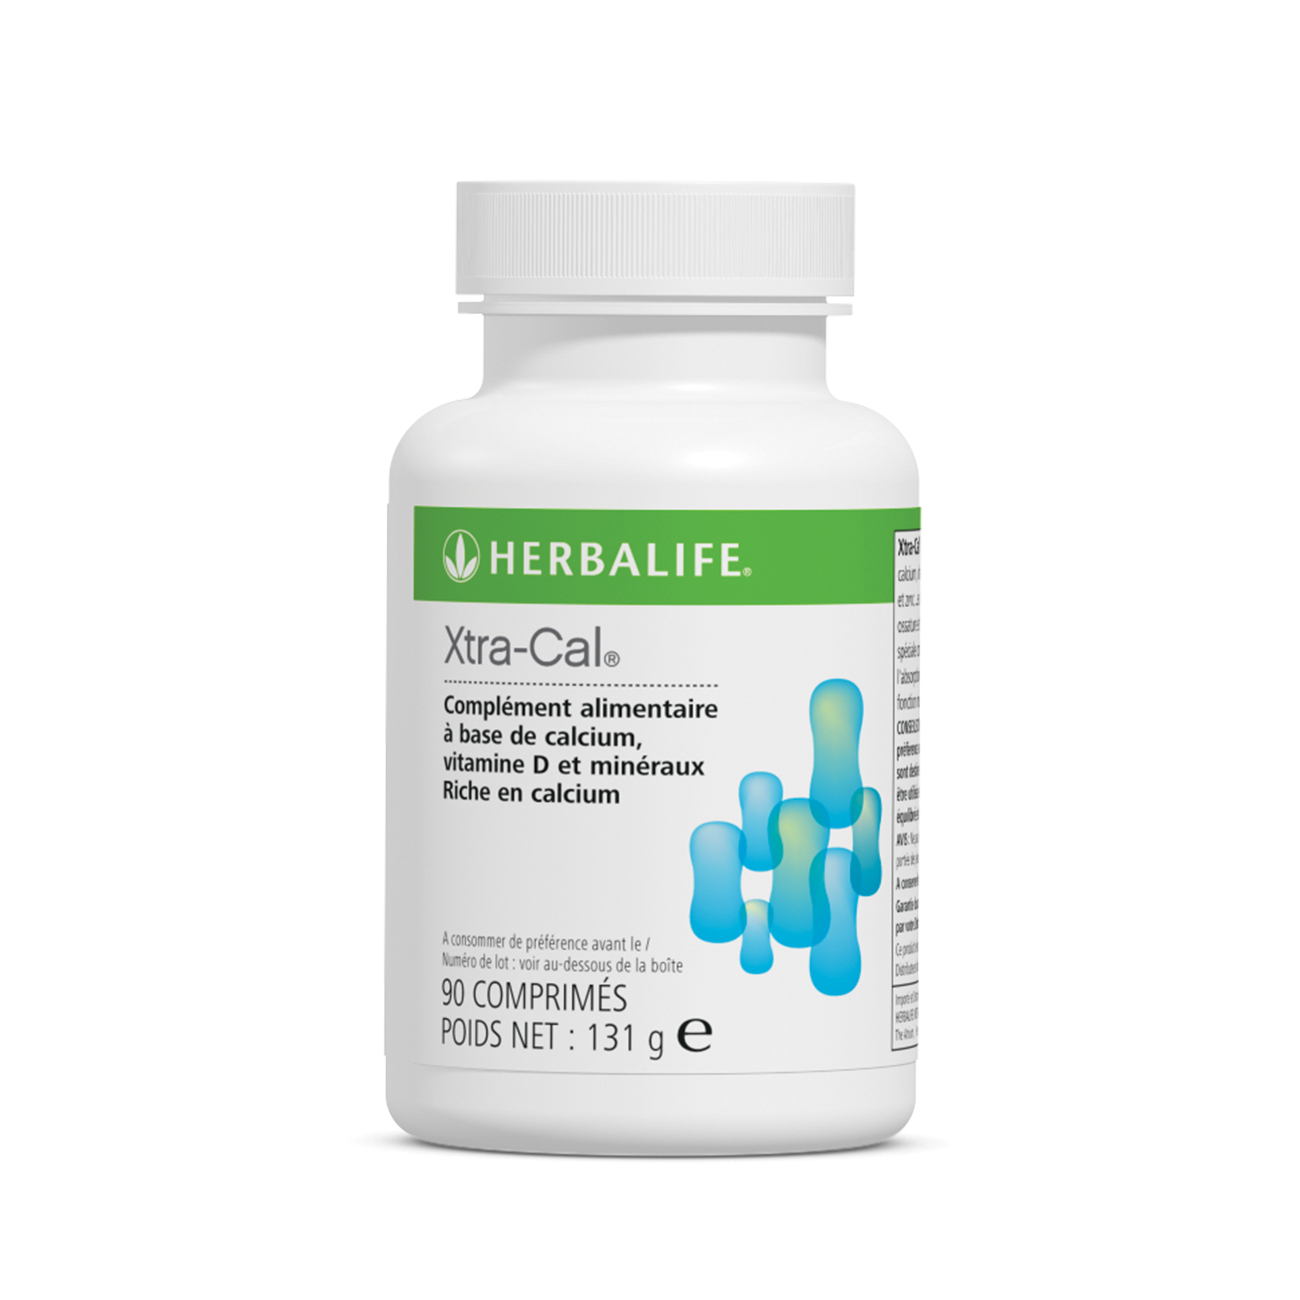 Xtra-Cal® Complément à base de calcium, vitamines D et minéraux product shot